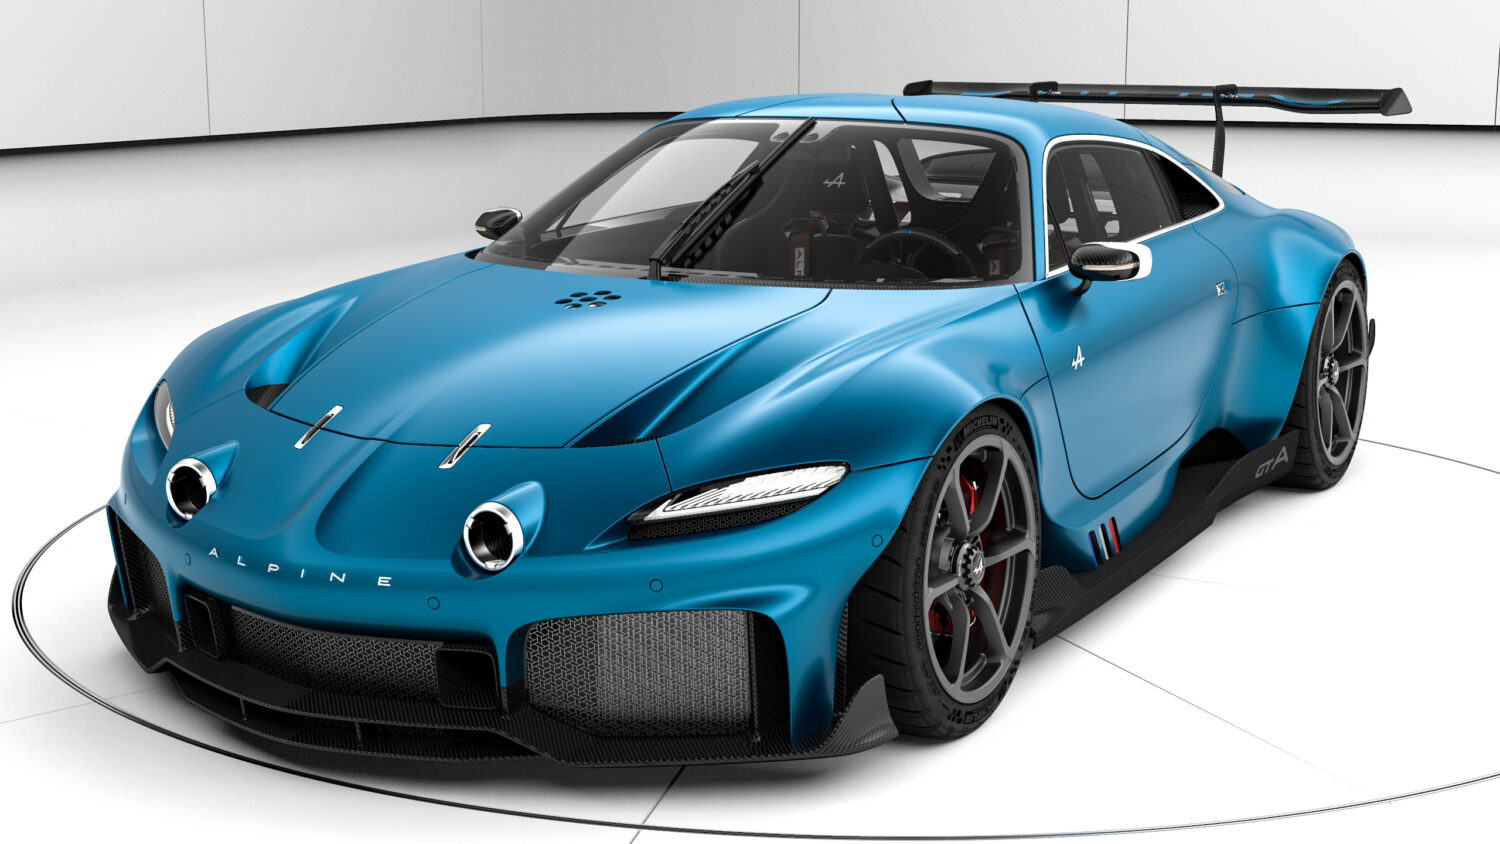 2021 - Alpine GTA Concept - NFT